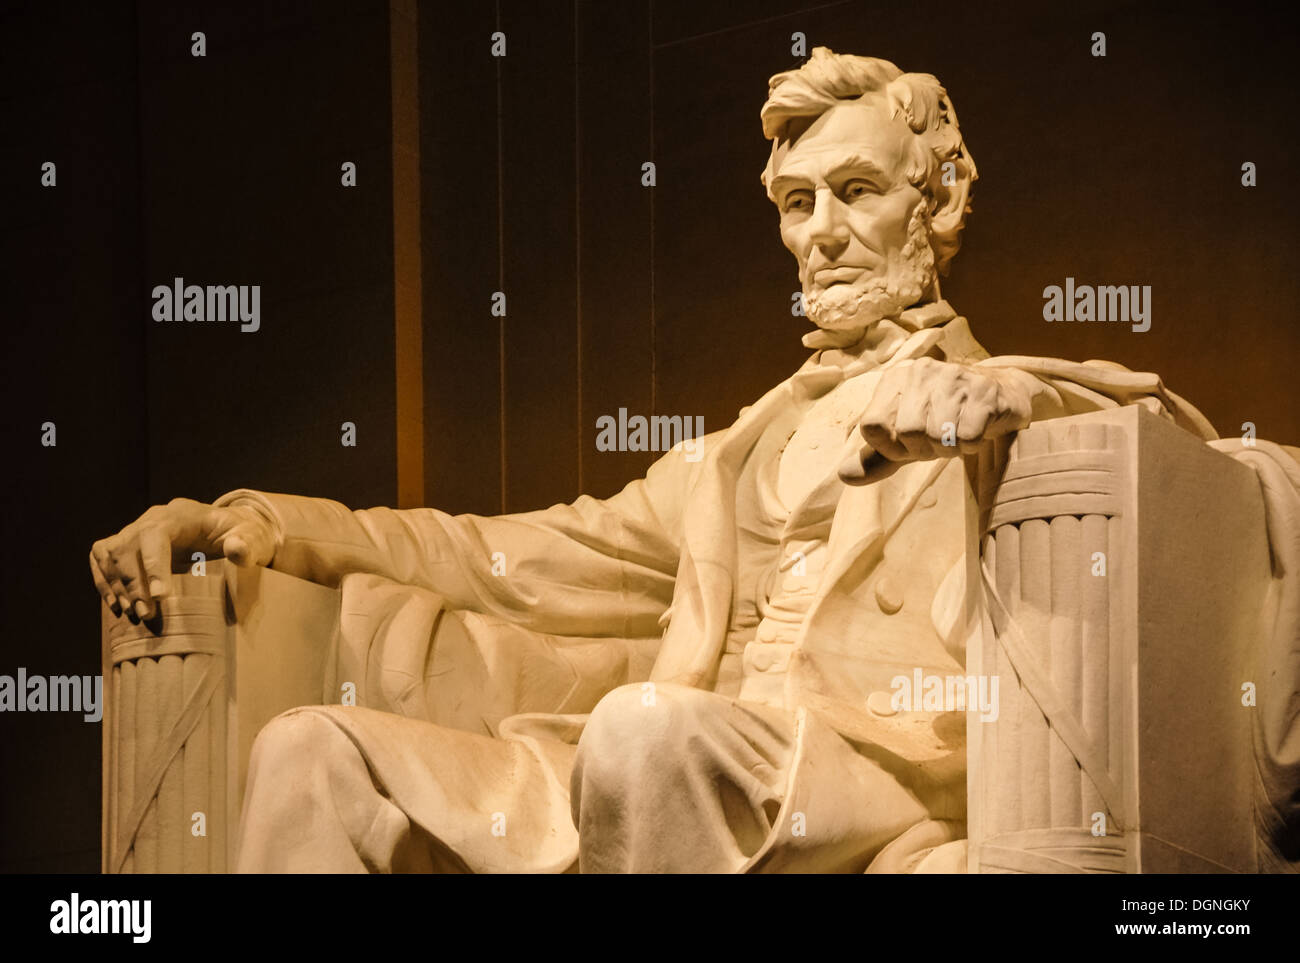 Statua del Lincoln Memorial di Abraham Lincoln a Washington, D.C. (USA) Foto Stock